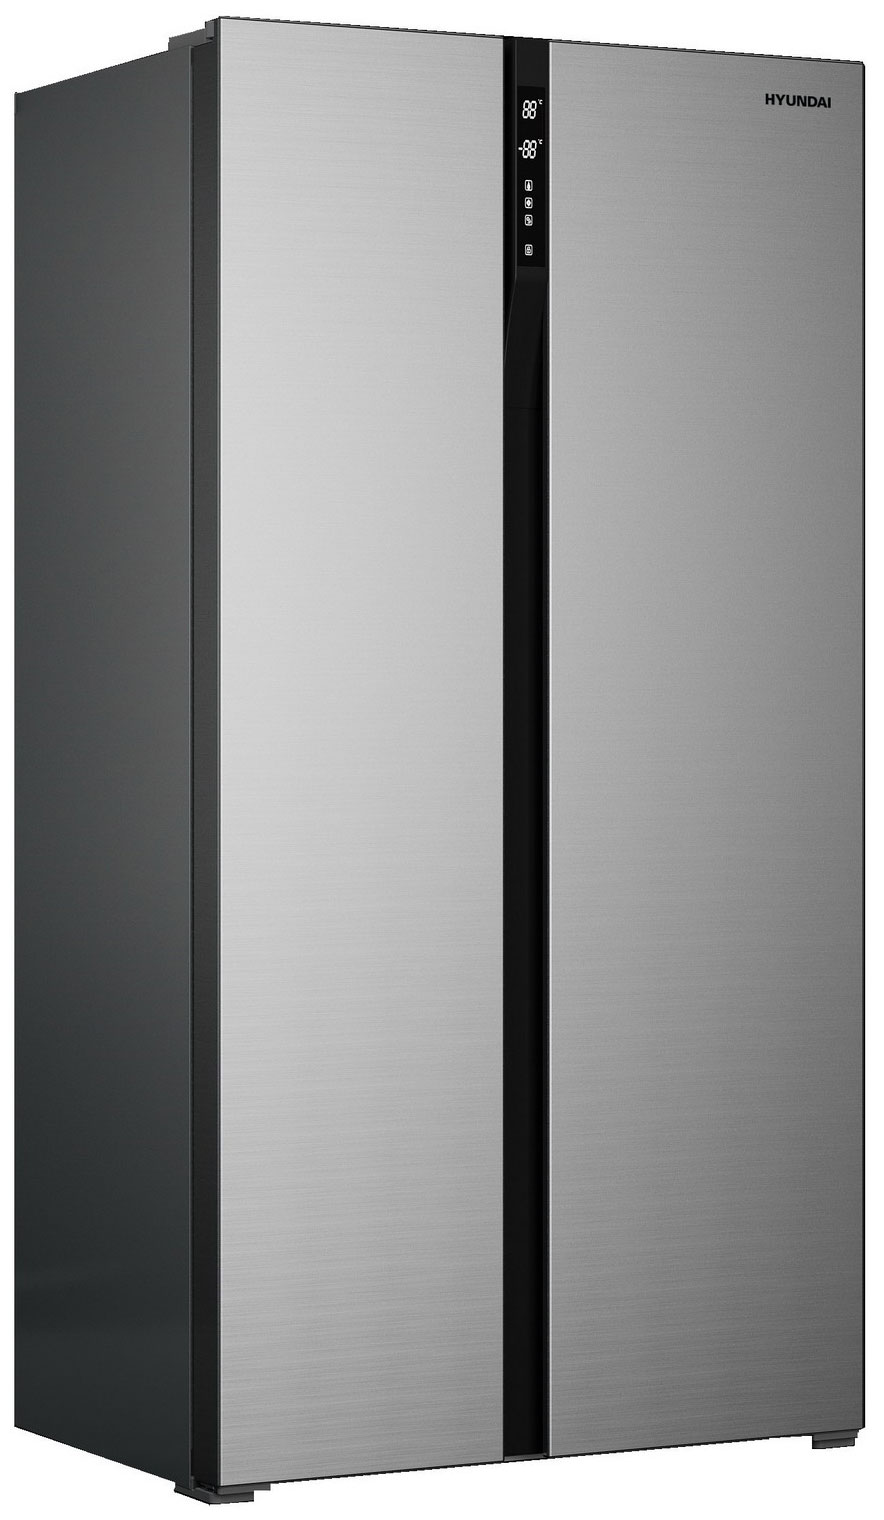 Холодильник Side by Side Hyundai CS6503FV нержавеющая сталь холодильник side by side hyundai cs6503fv черное стекло